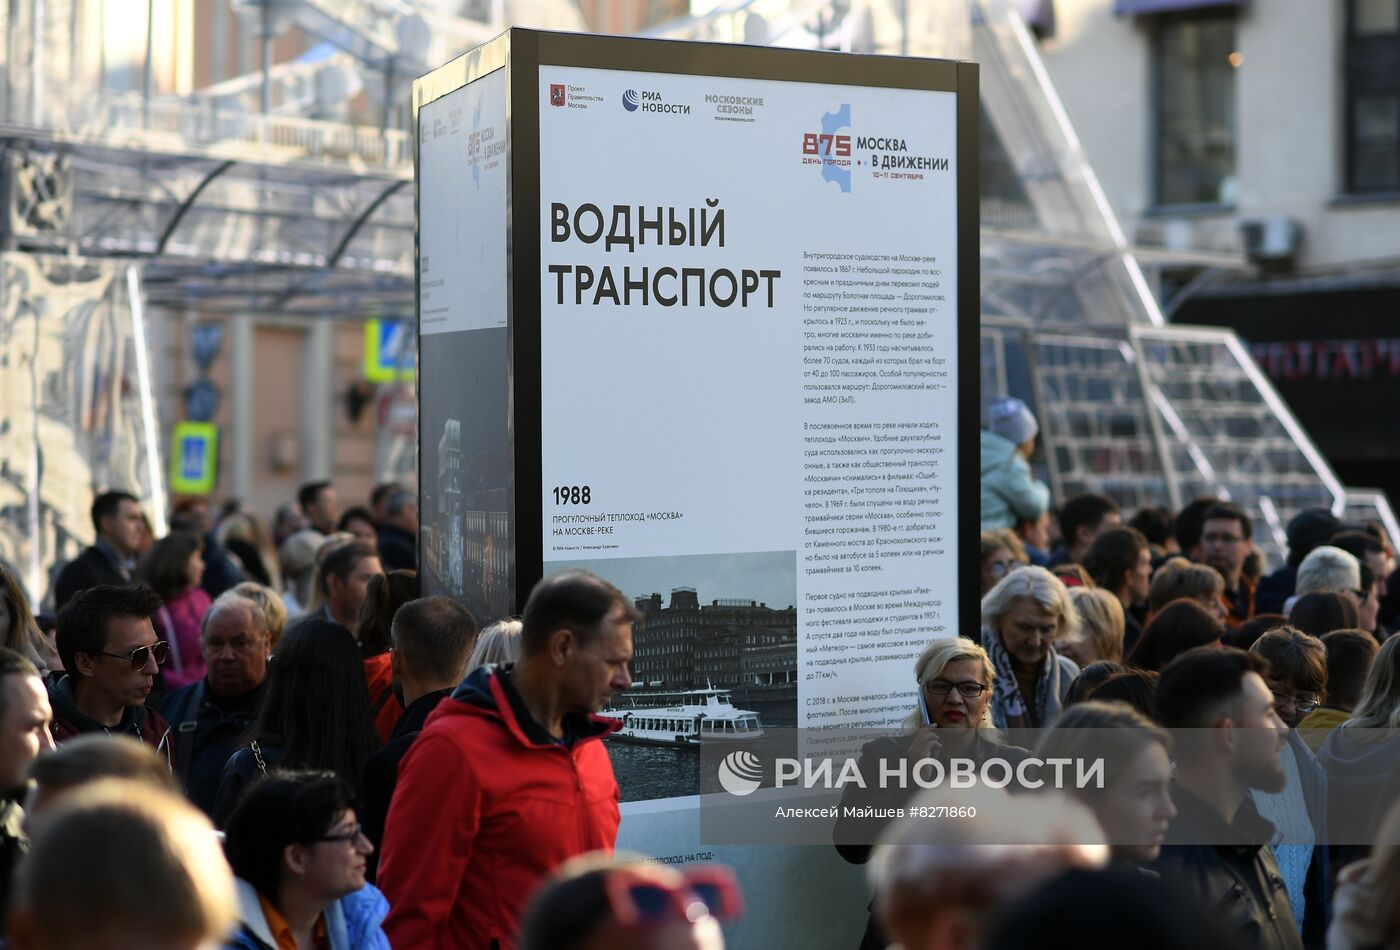 Фотовыставка медиагруппы "Россия сегодня" на Тверской